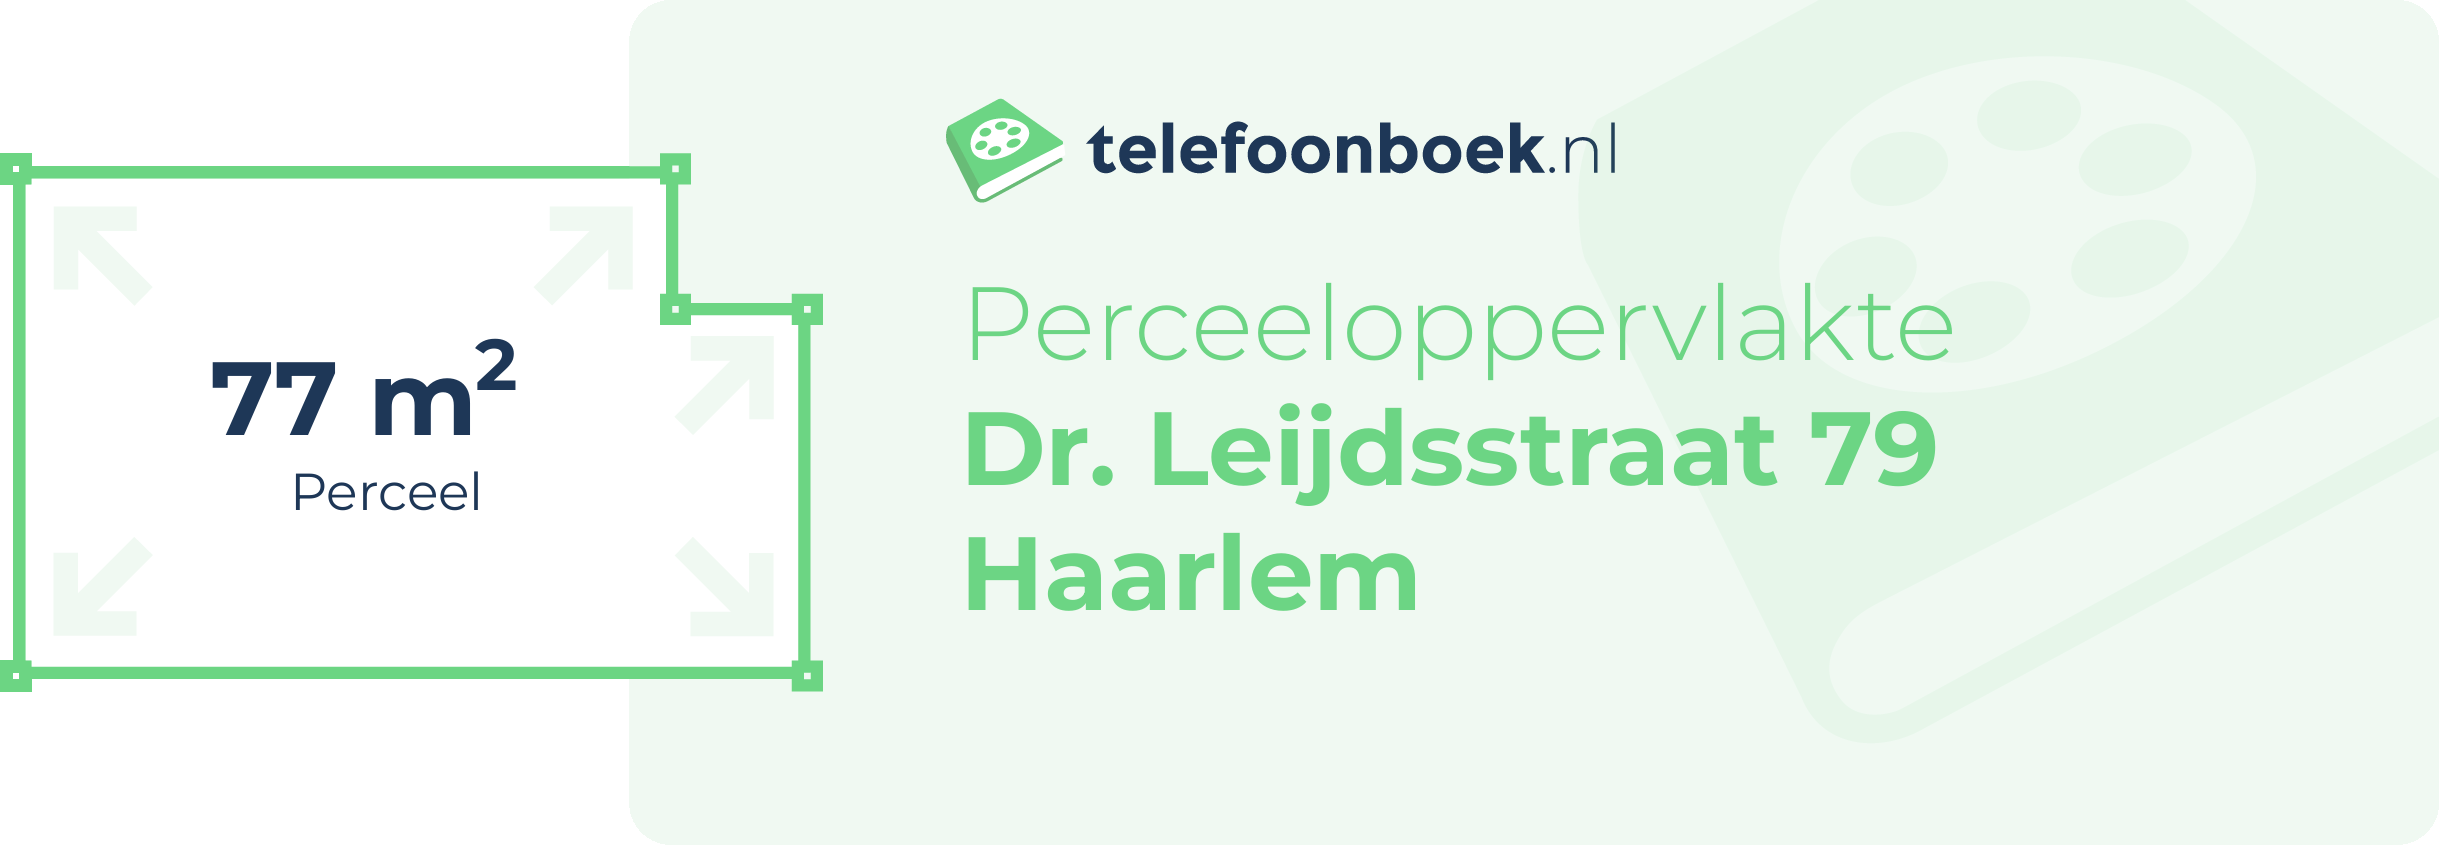 Perceeloppervlakte Dr. Leijdsstraat 79 Haarlem